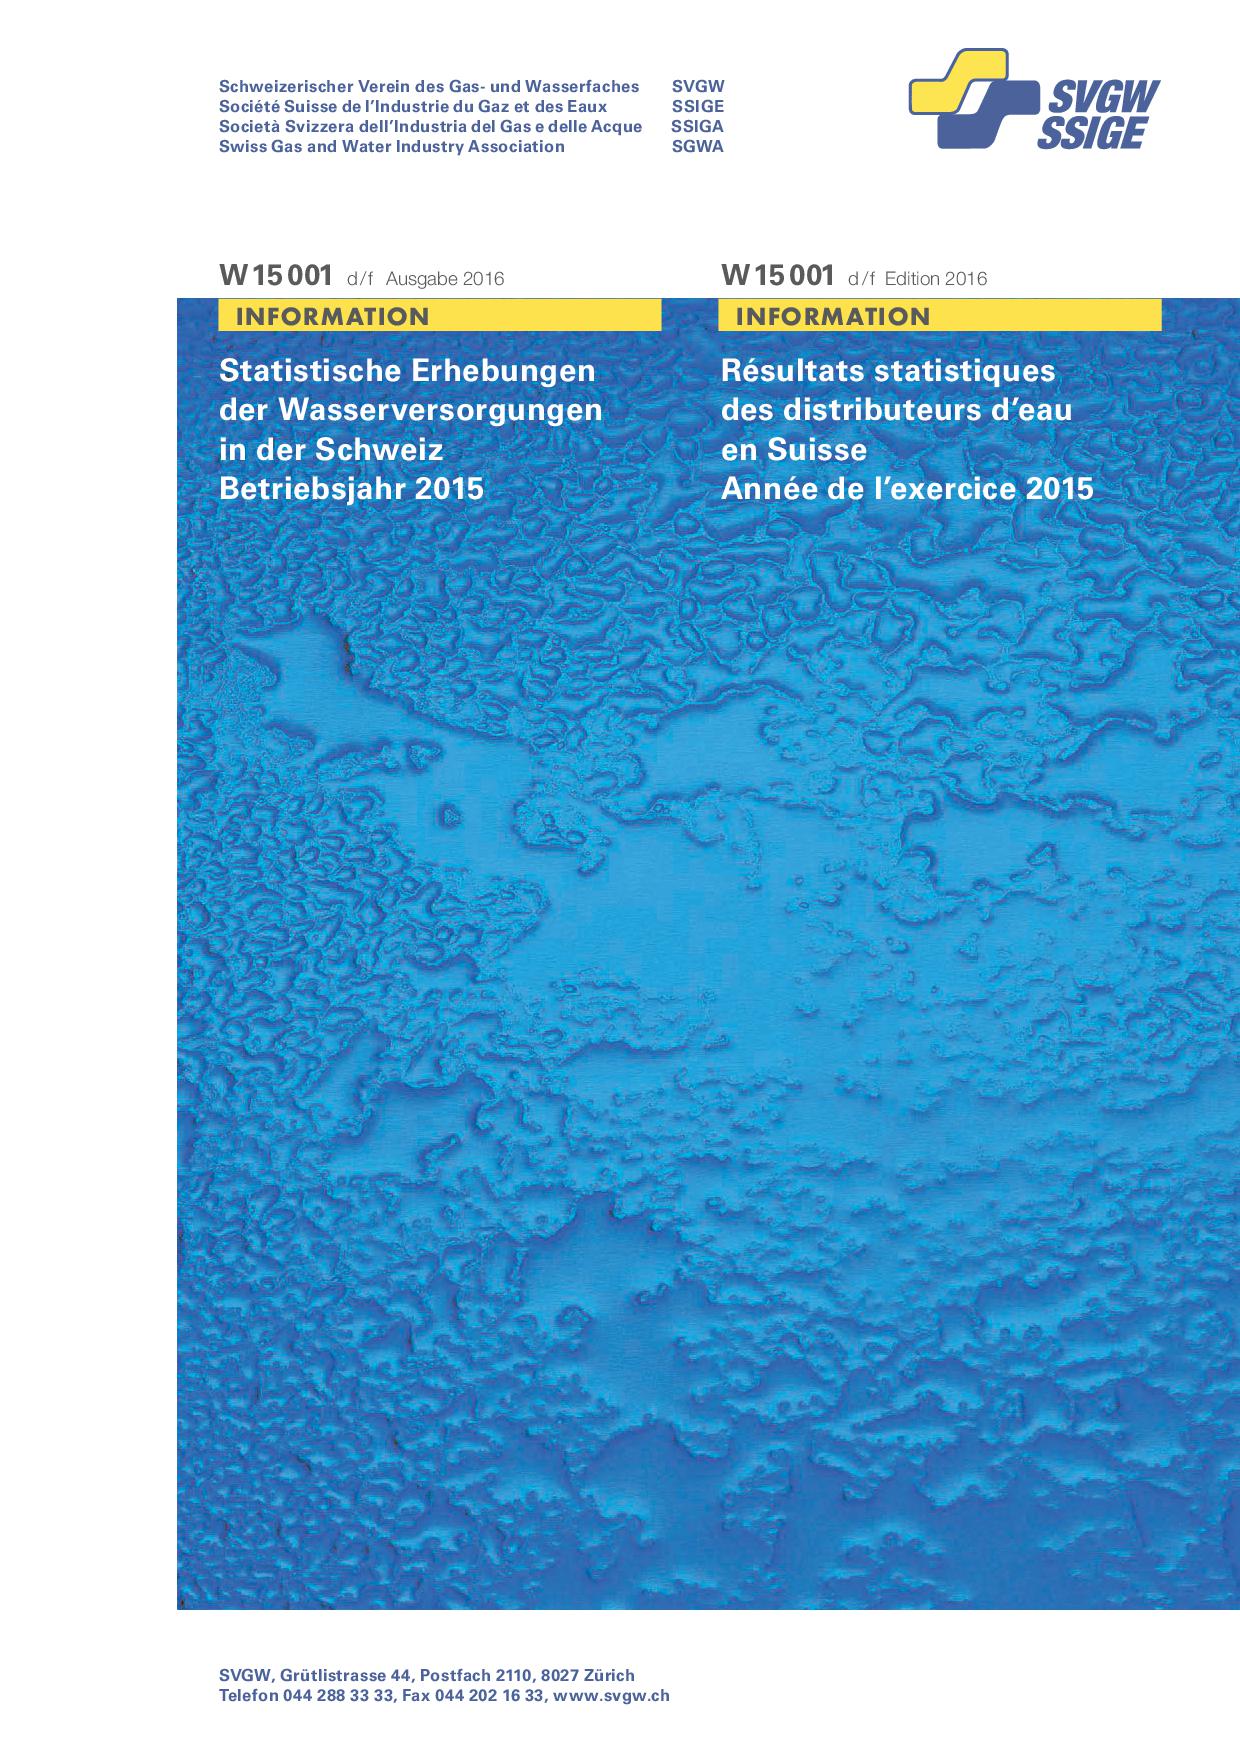 W15001 d/f Wasserstatistik 2016 (Betriebsjahr 2015) (erweiterte Ausgabe)